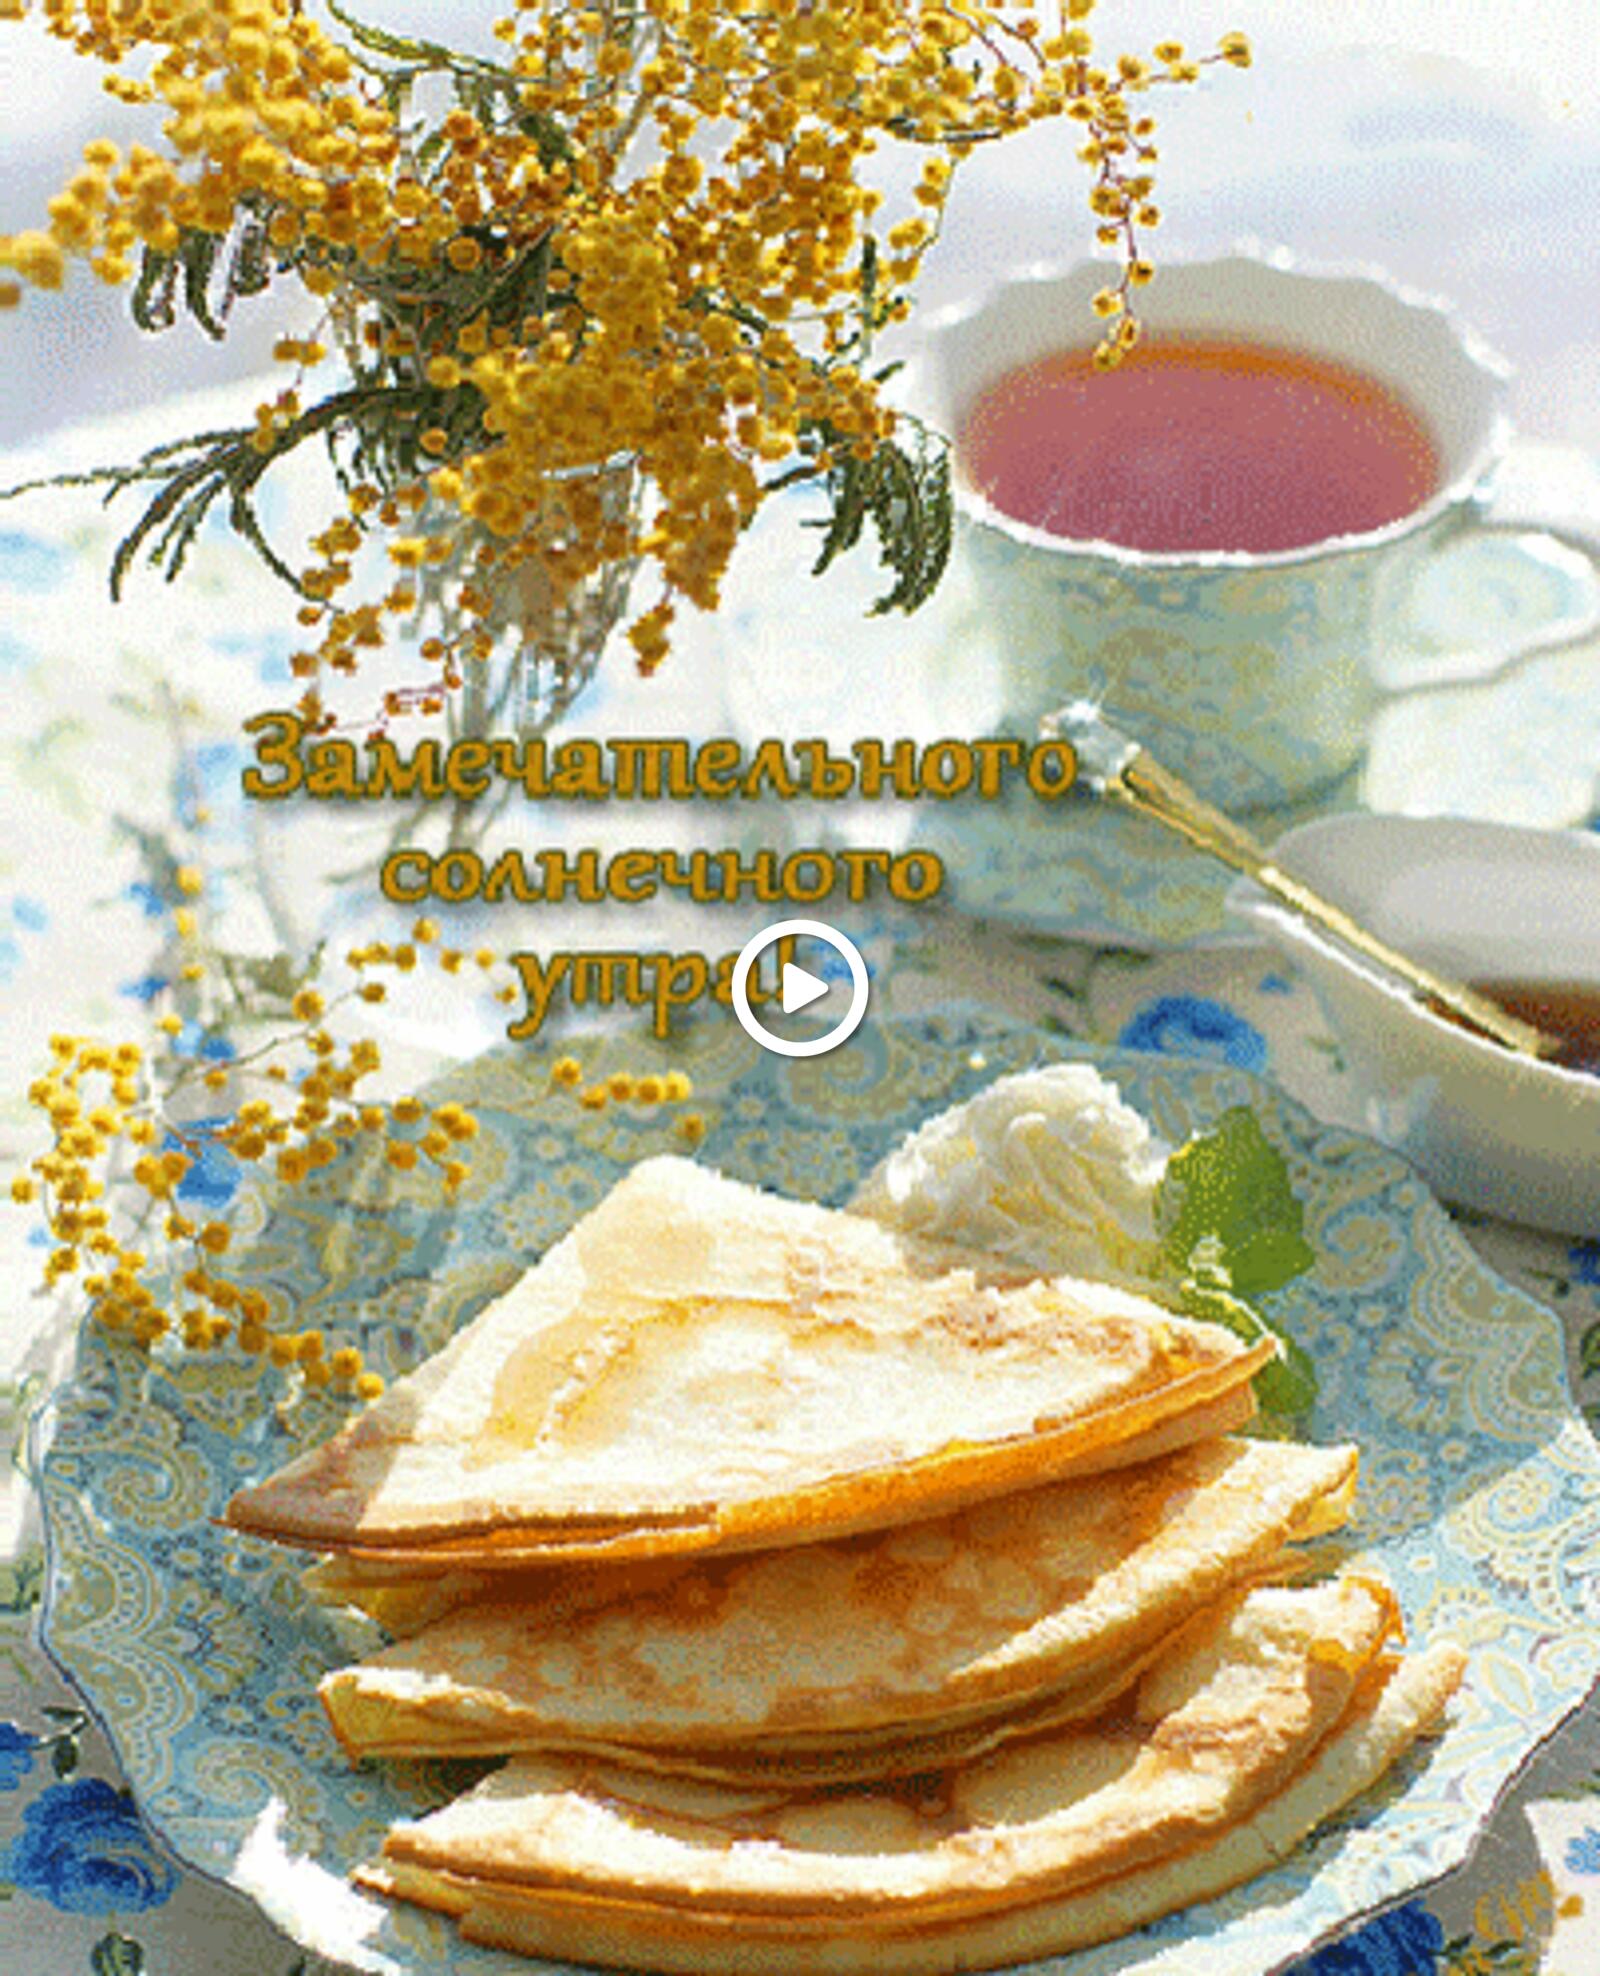 一张以早茶 早晨的Shrovetide 饮品为主题的明信片